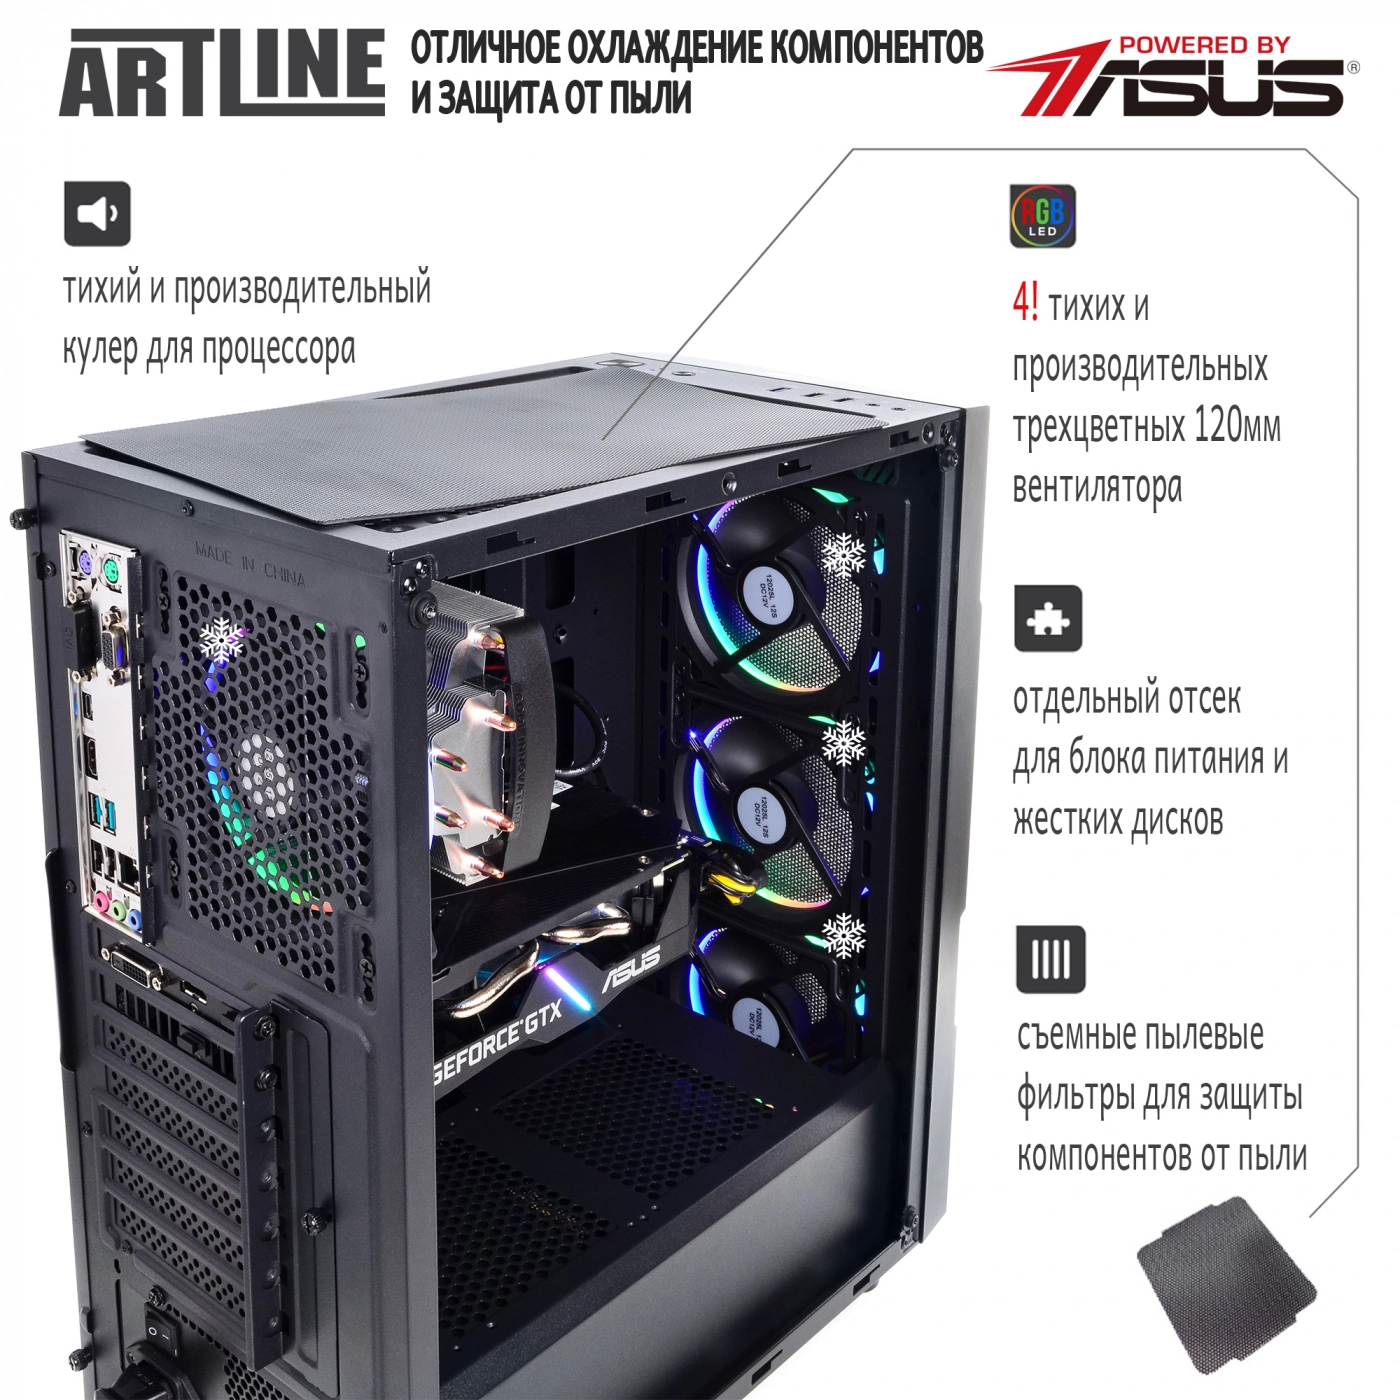 Купить Компьютер ARTLINE Gaming X52v05 - фото 2